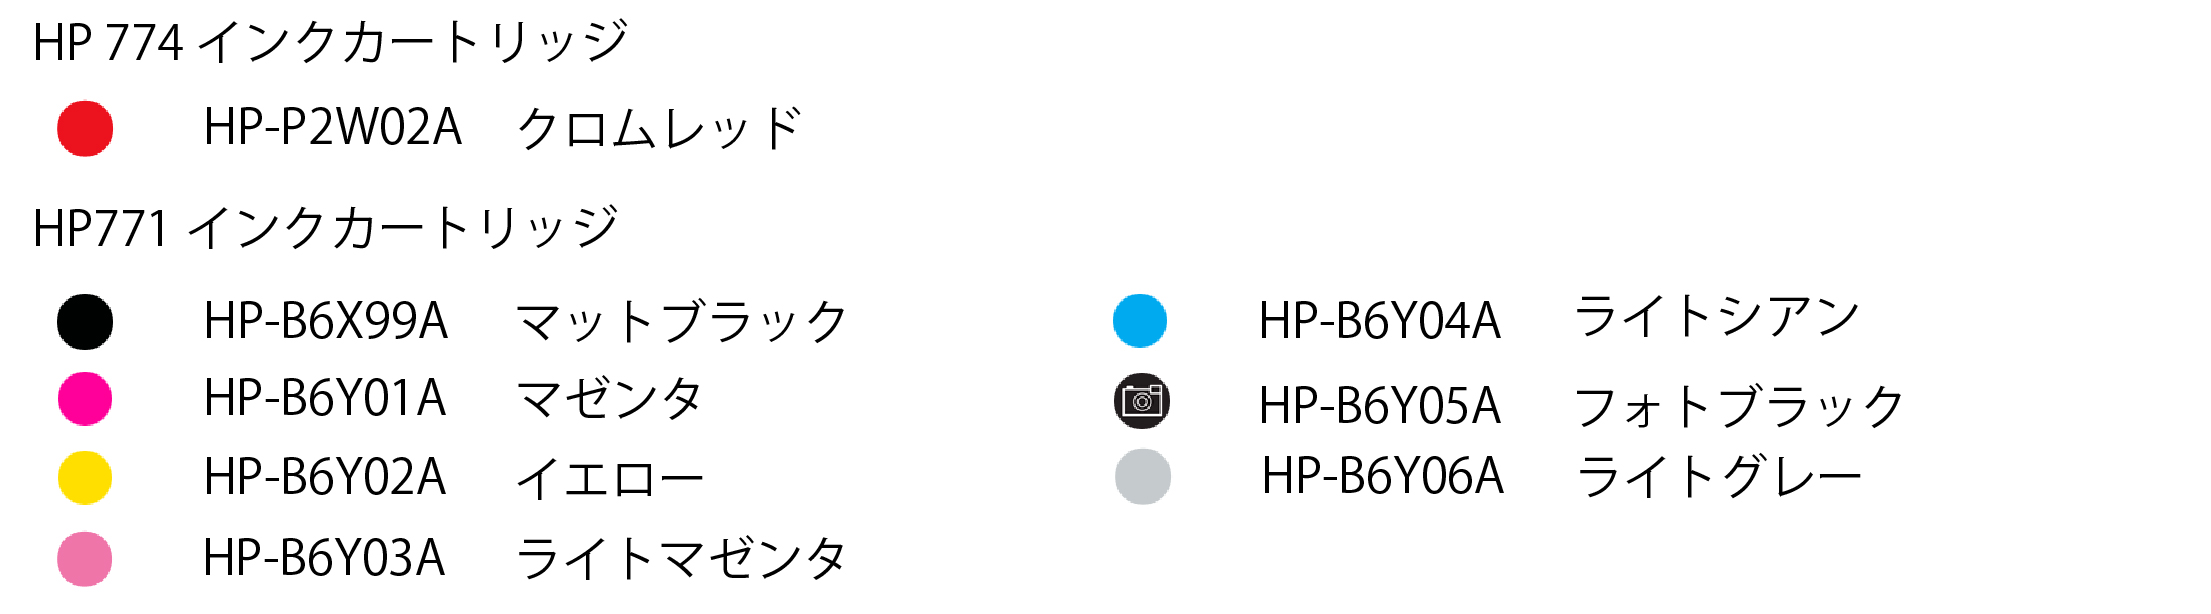 ユーロポート株式会社 日本HP DesignJet Z6810用 HP771 HP774 インク 775ml 【HP771 HP774】  水性